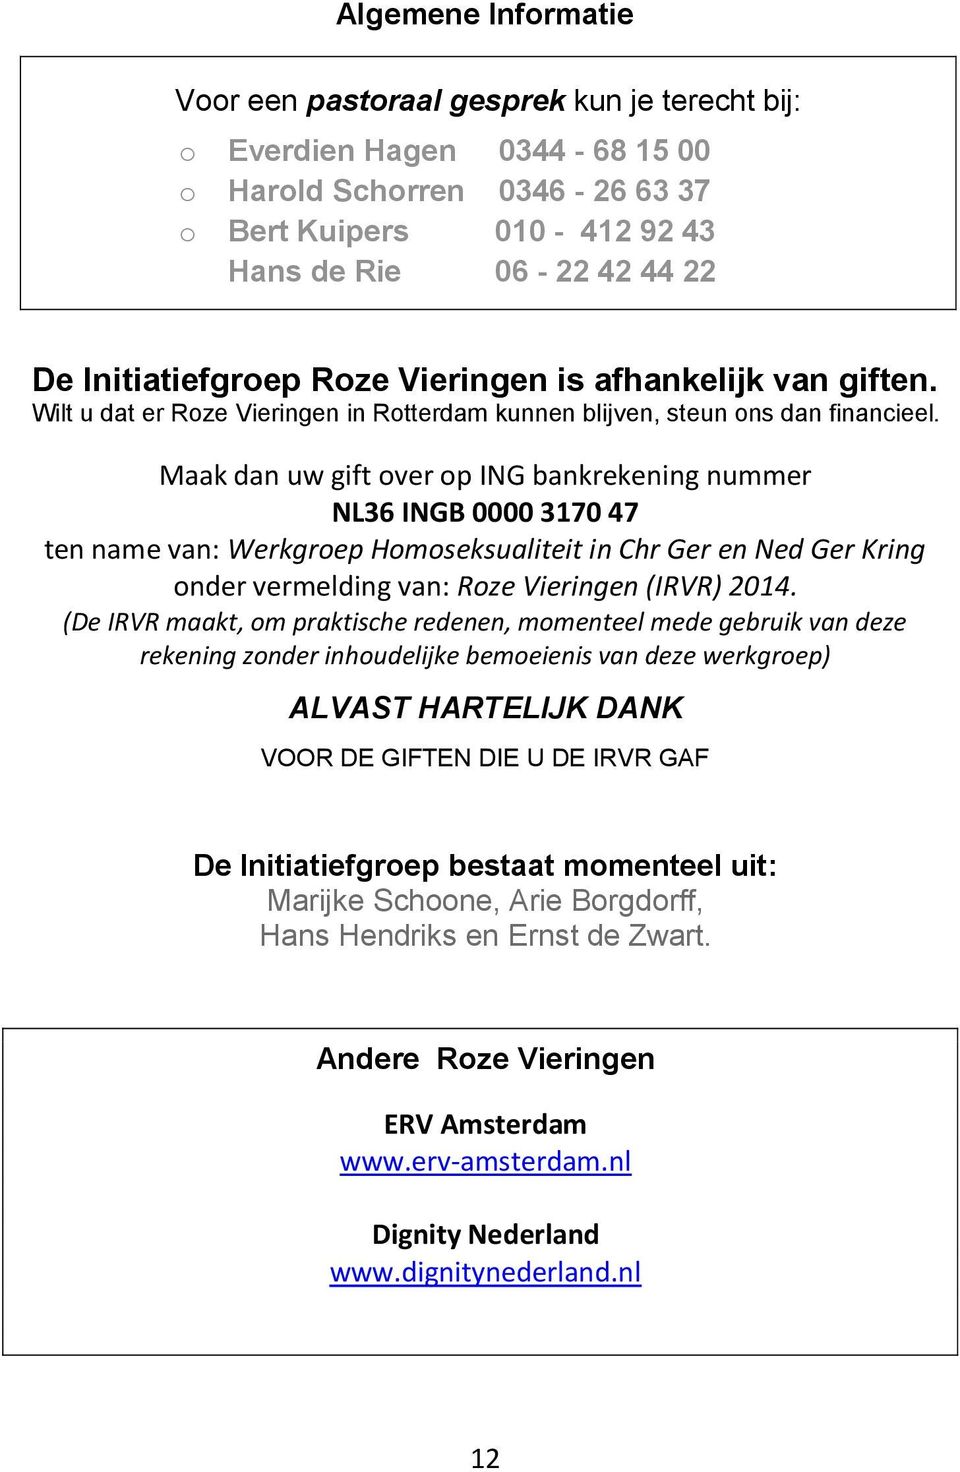 Maak dan uw gift over op ING bankrekening nummer NL36 INGB 0000 3170 47 ten name van: Werkgroep Homoseksualiteit in Chr Ger en Ned Ger Kring onder vermelding van: Roze Vieringen (IRVR) 2014.